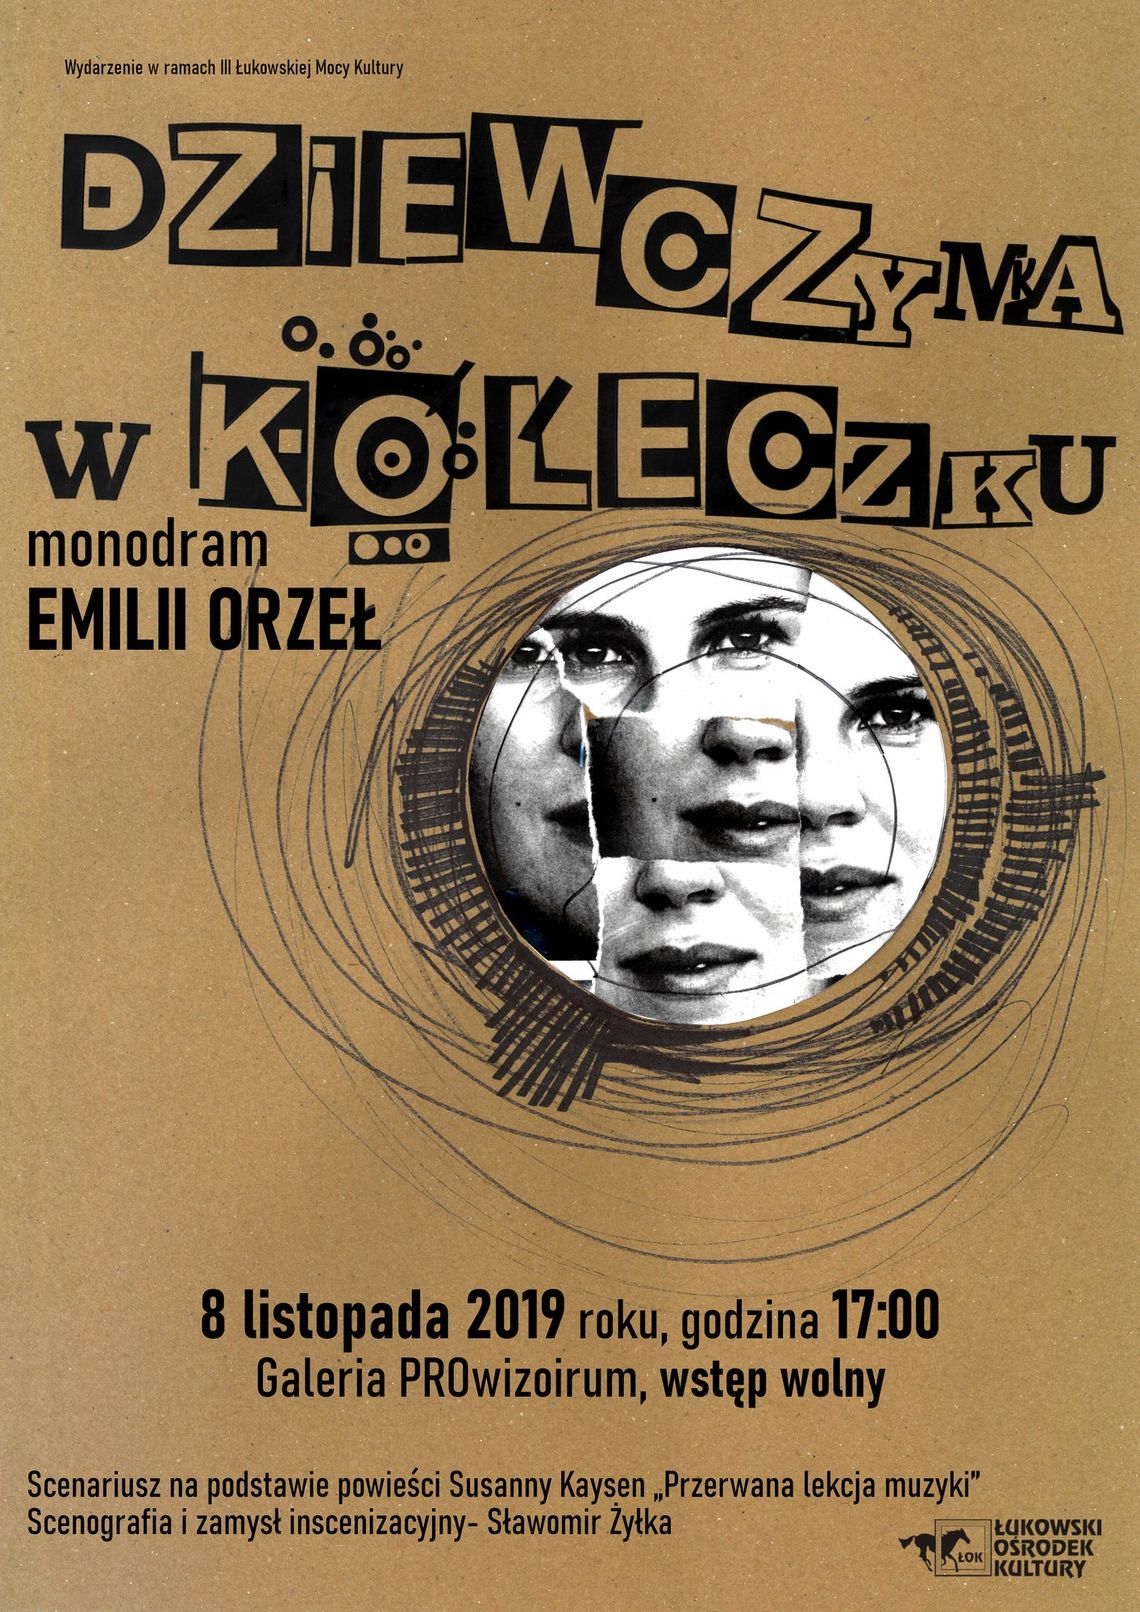 Monodram „Dziewczynka w kółeczku” w wykonaniu Emilii Orzeł /8 listopada 2019